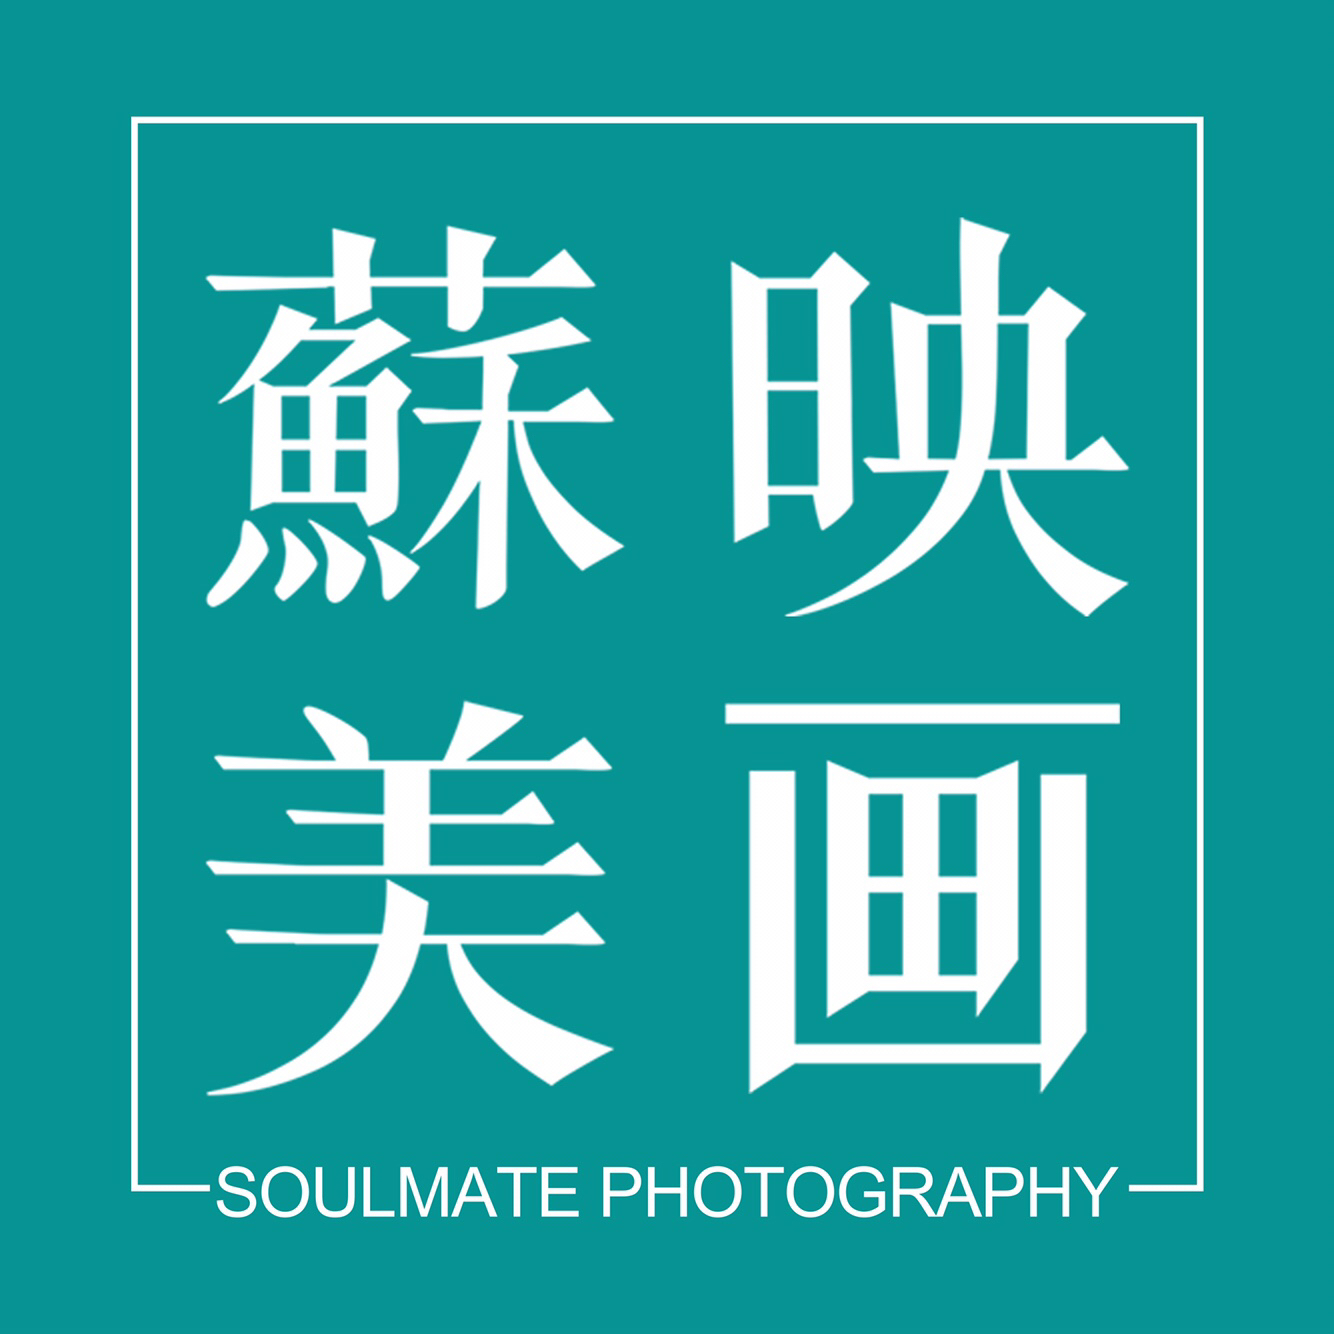 廣州蘇美映畫婚紗攝影工作室